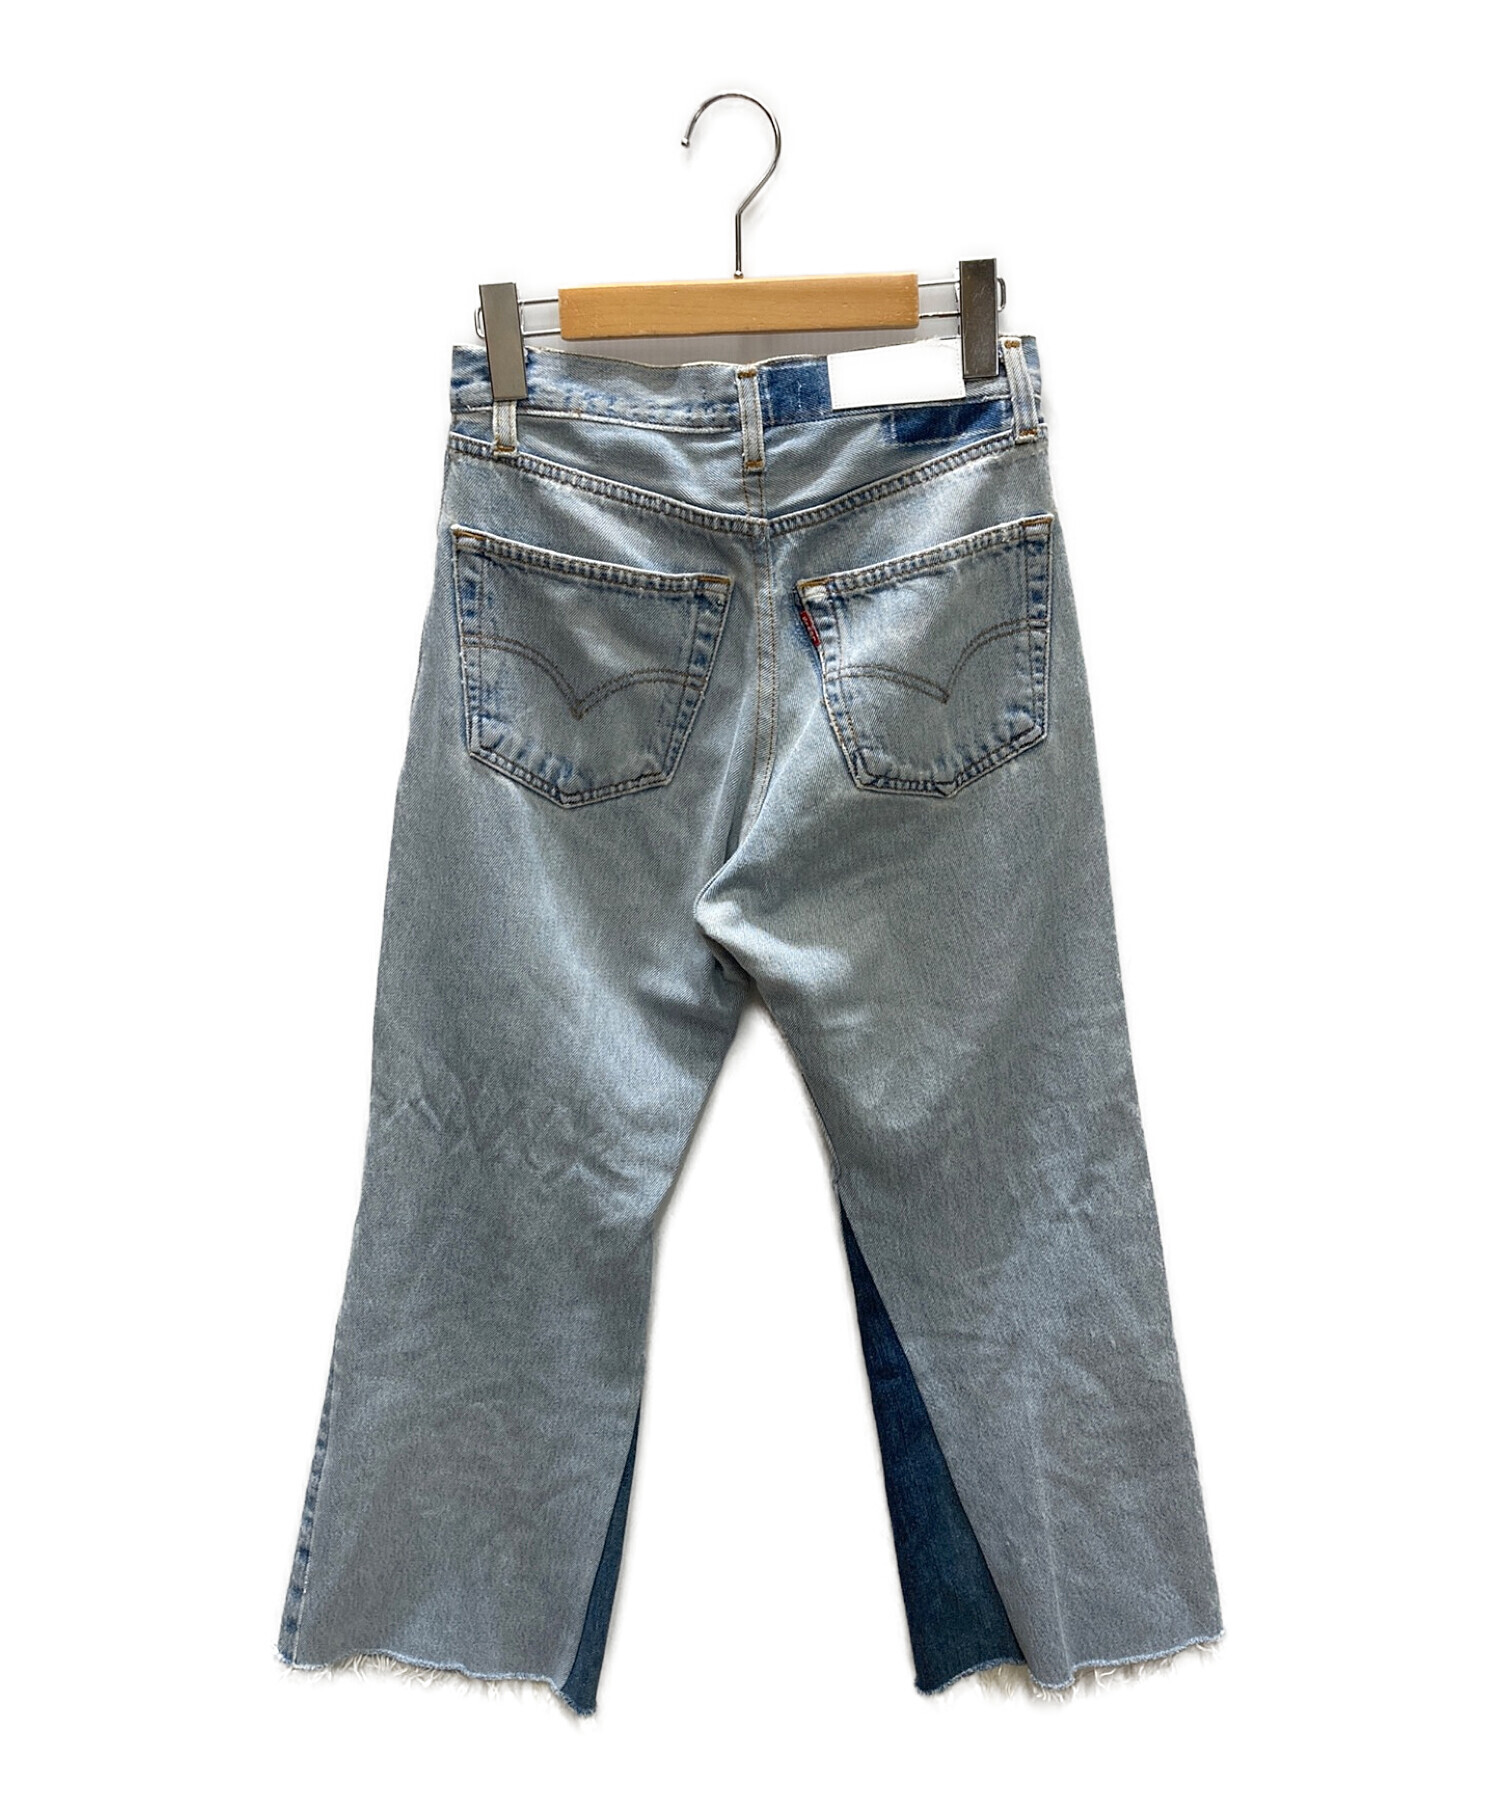 Vintage Levis 501 Selvedge Button 6 Denim Jeans 28 x 26 Raw Hem